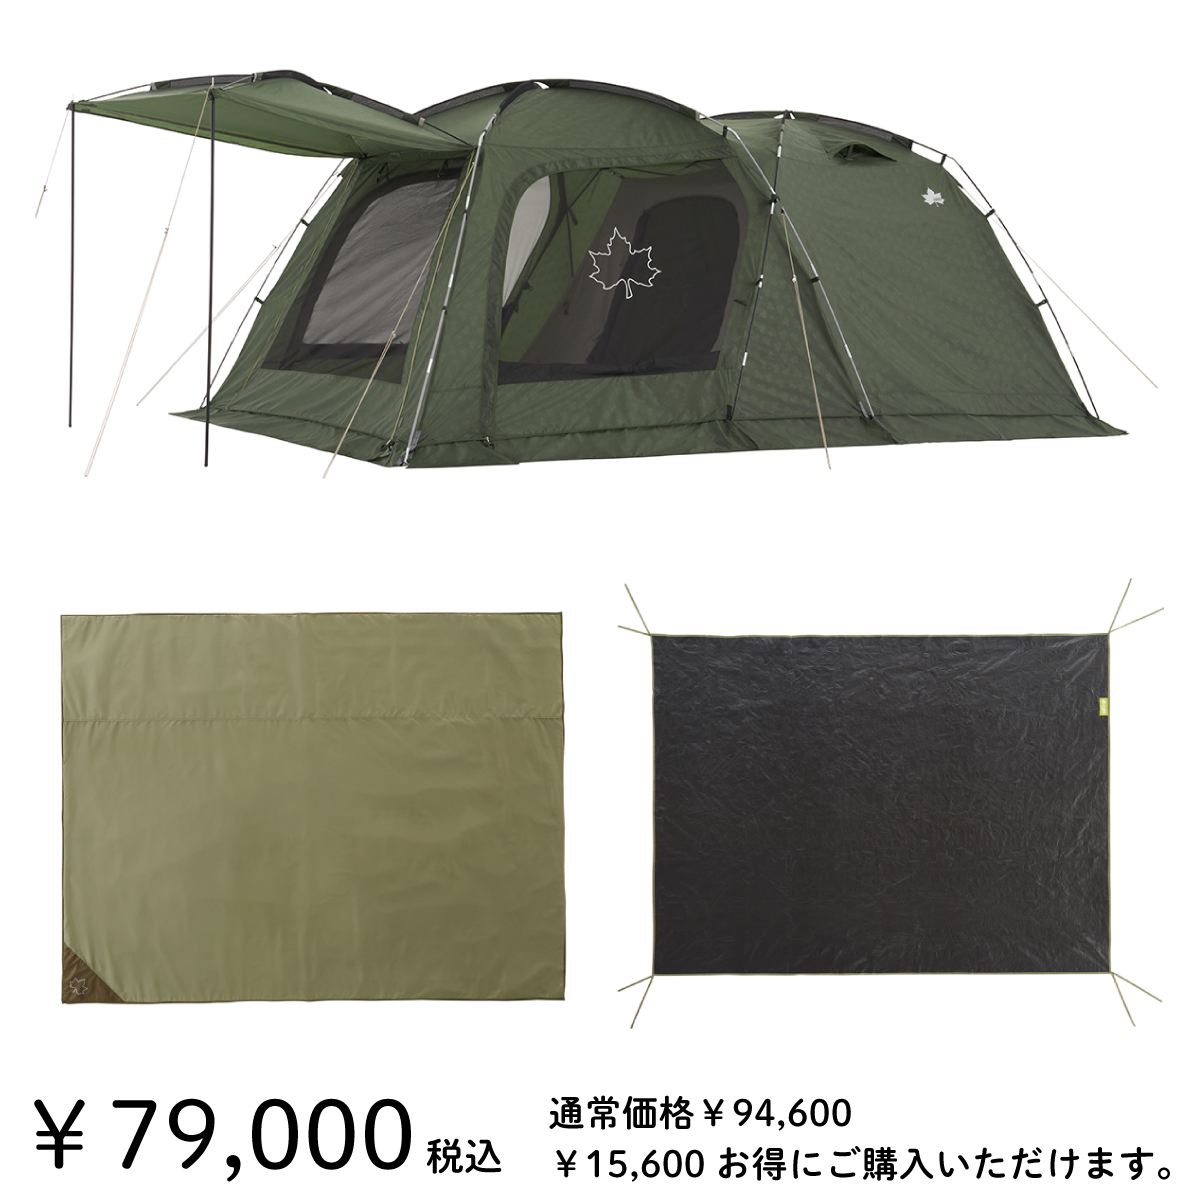 10,731円ロゴス neos panel スクリーンドゥーブルL 2ルーム テント